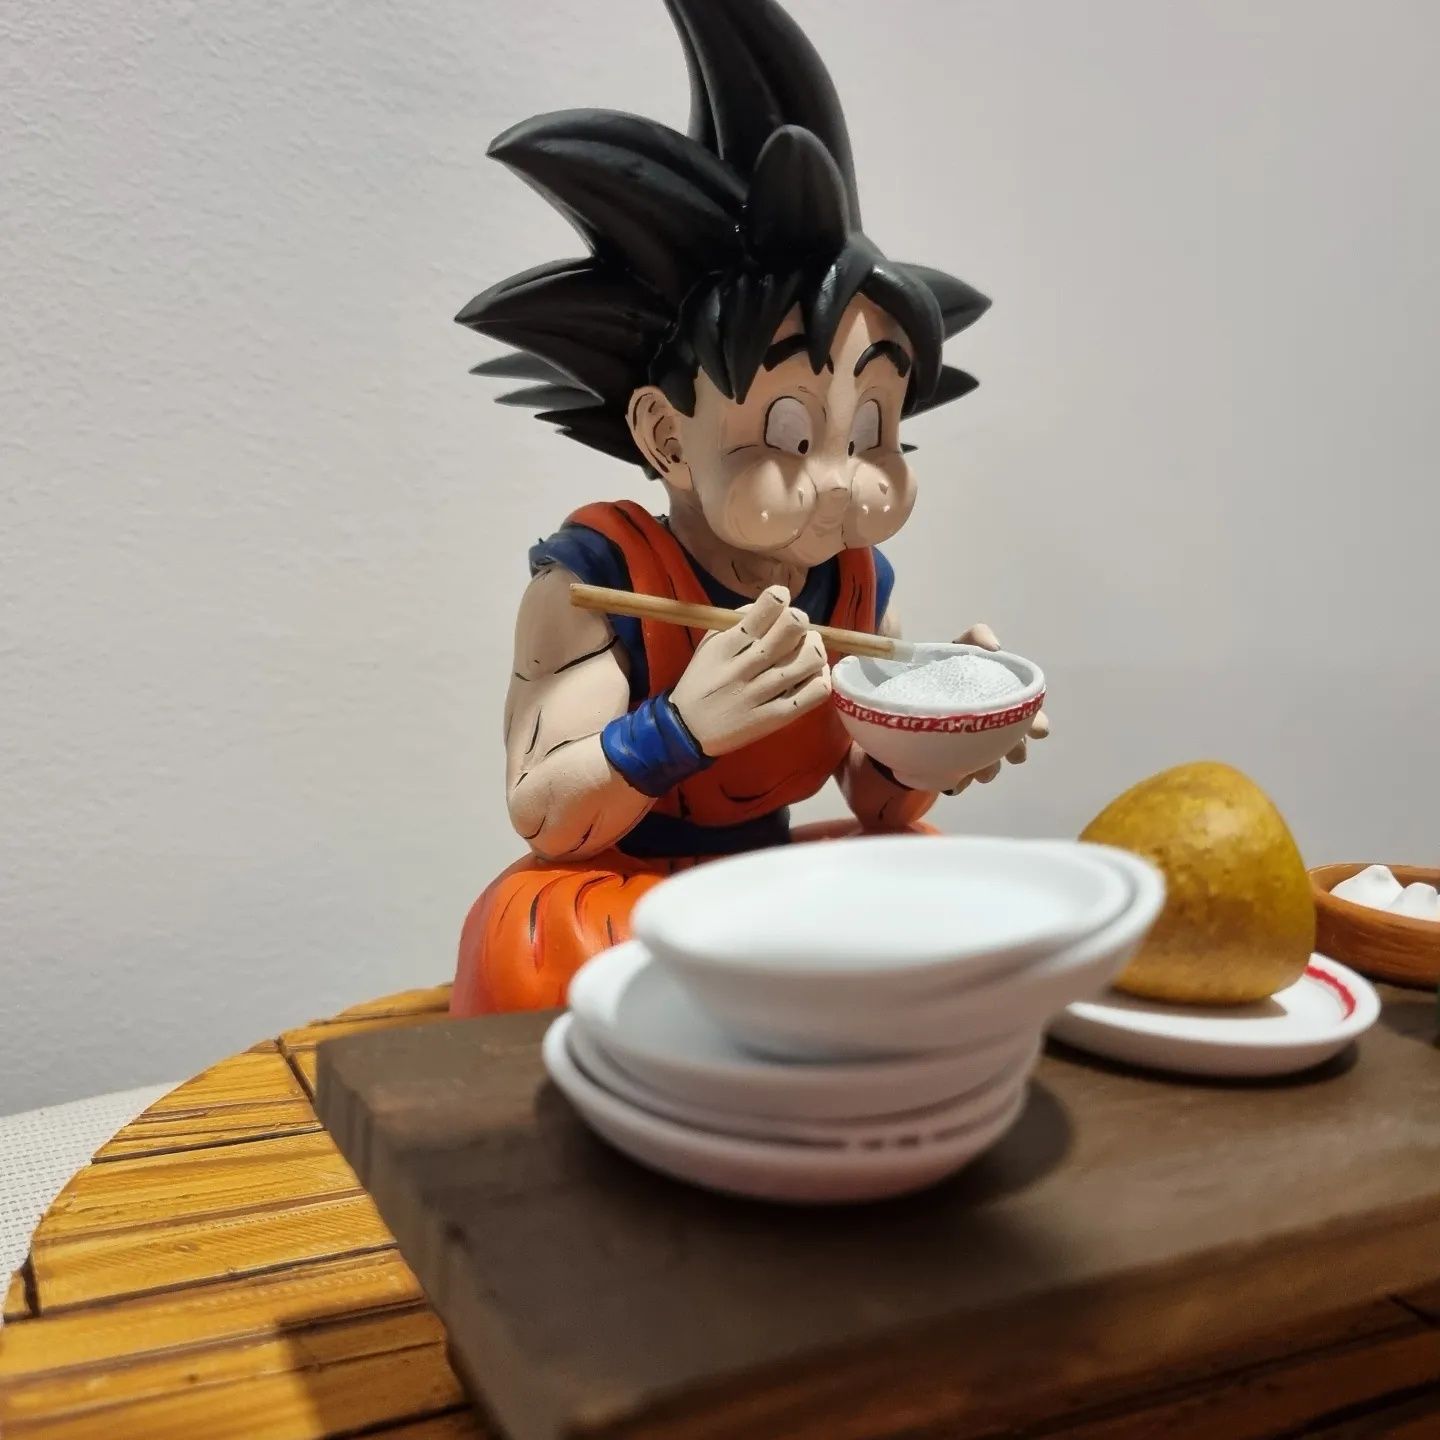 Diorama do Goku a almoçar